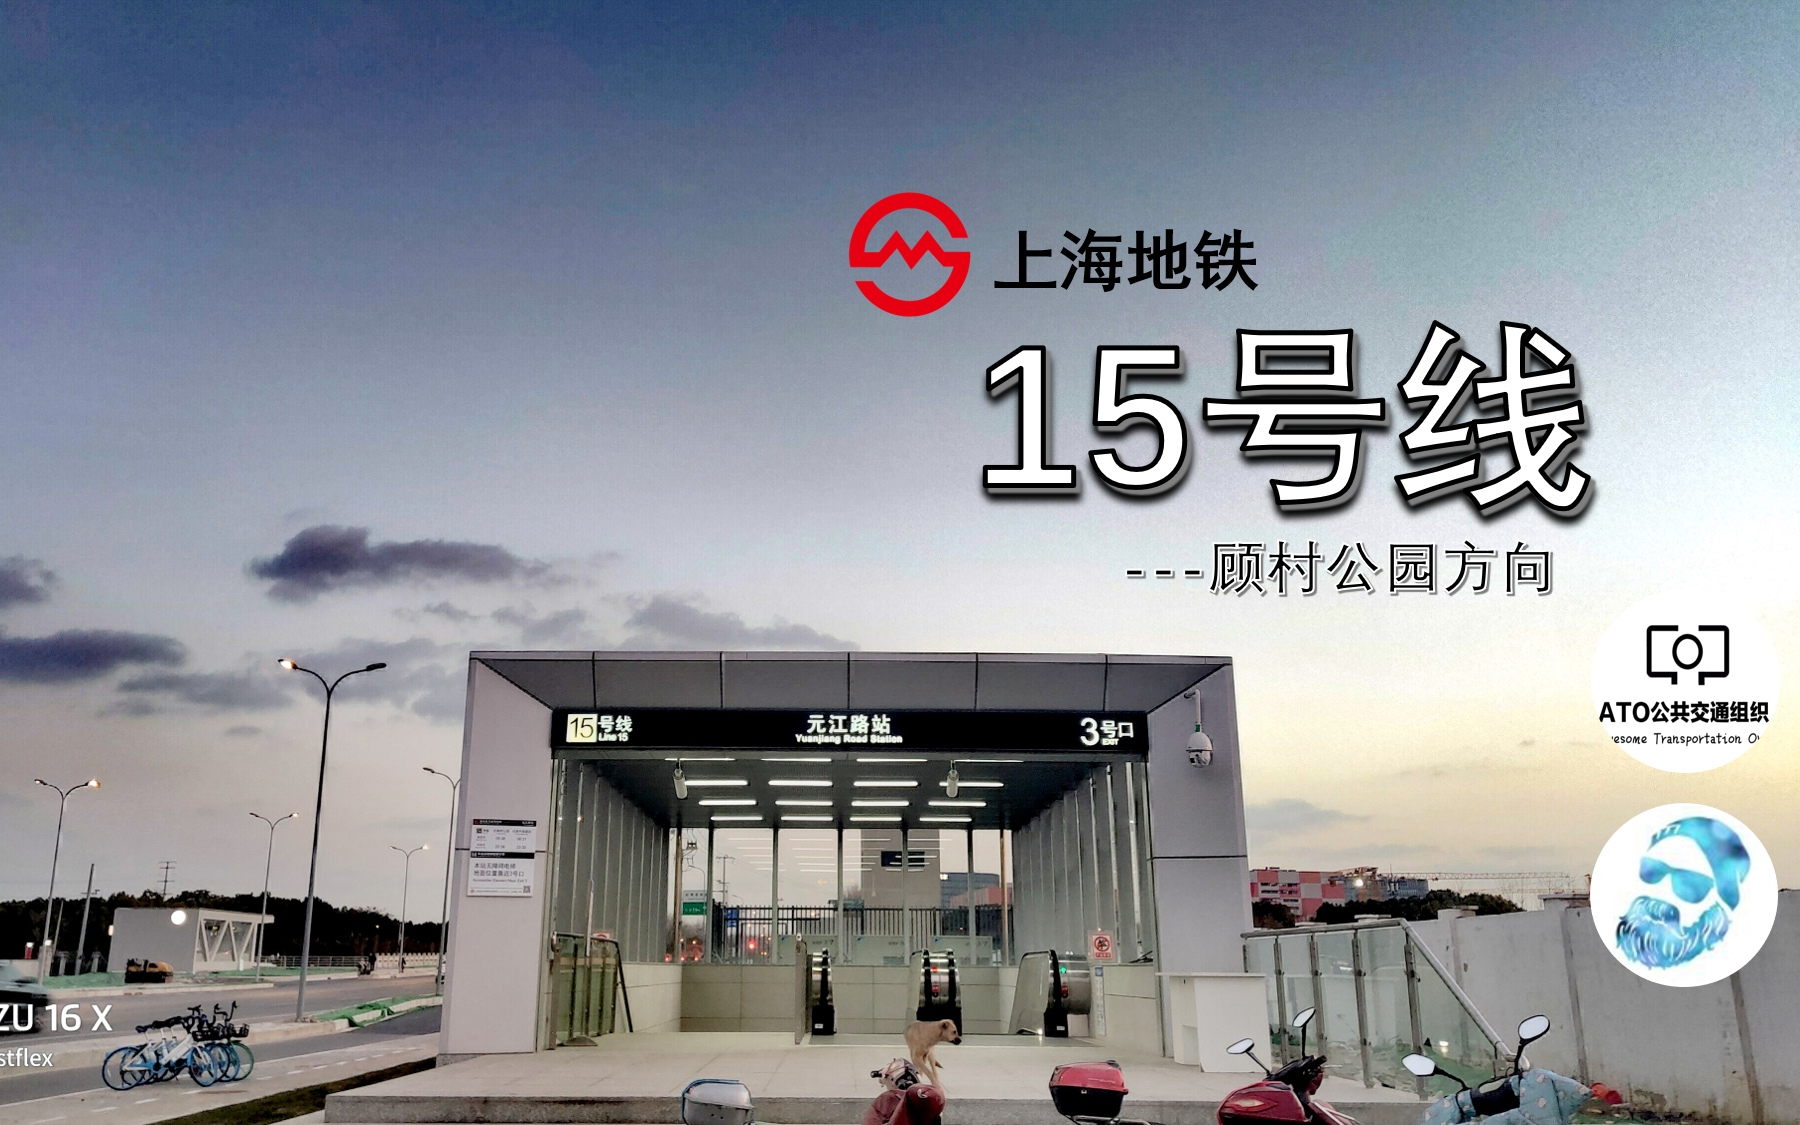 原速原声上海地铁15号线pov顾村公园方向第一视角展望